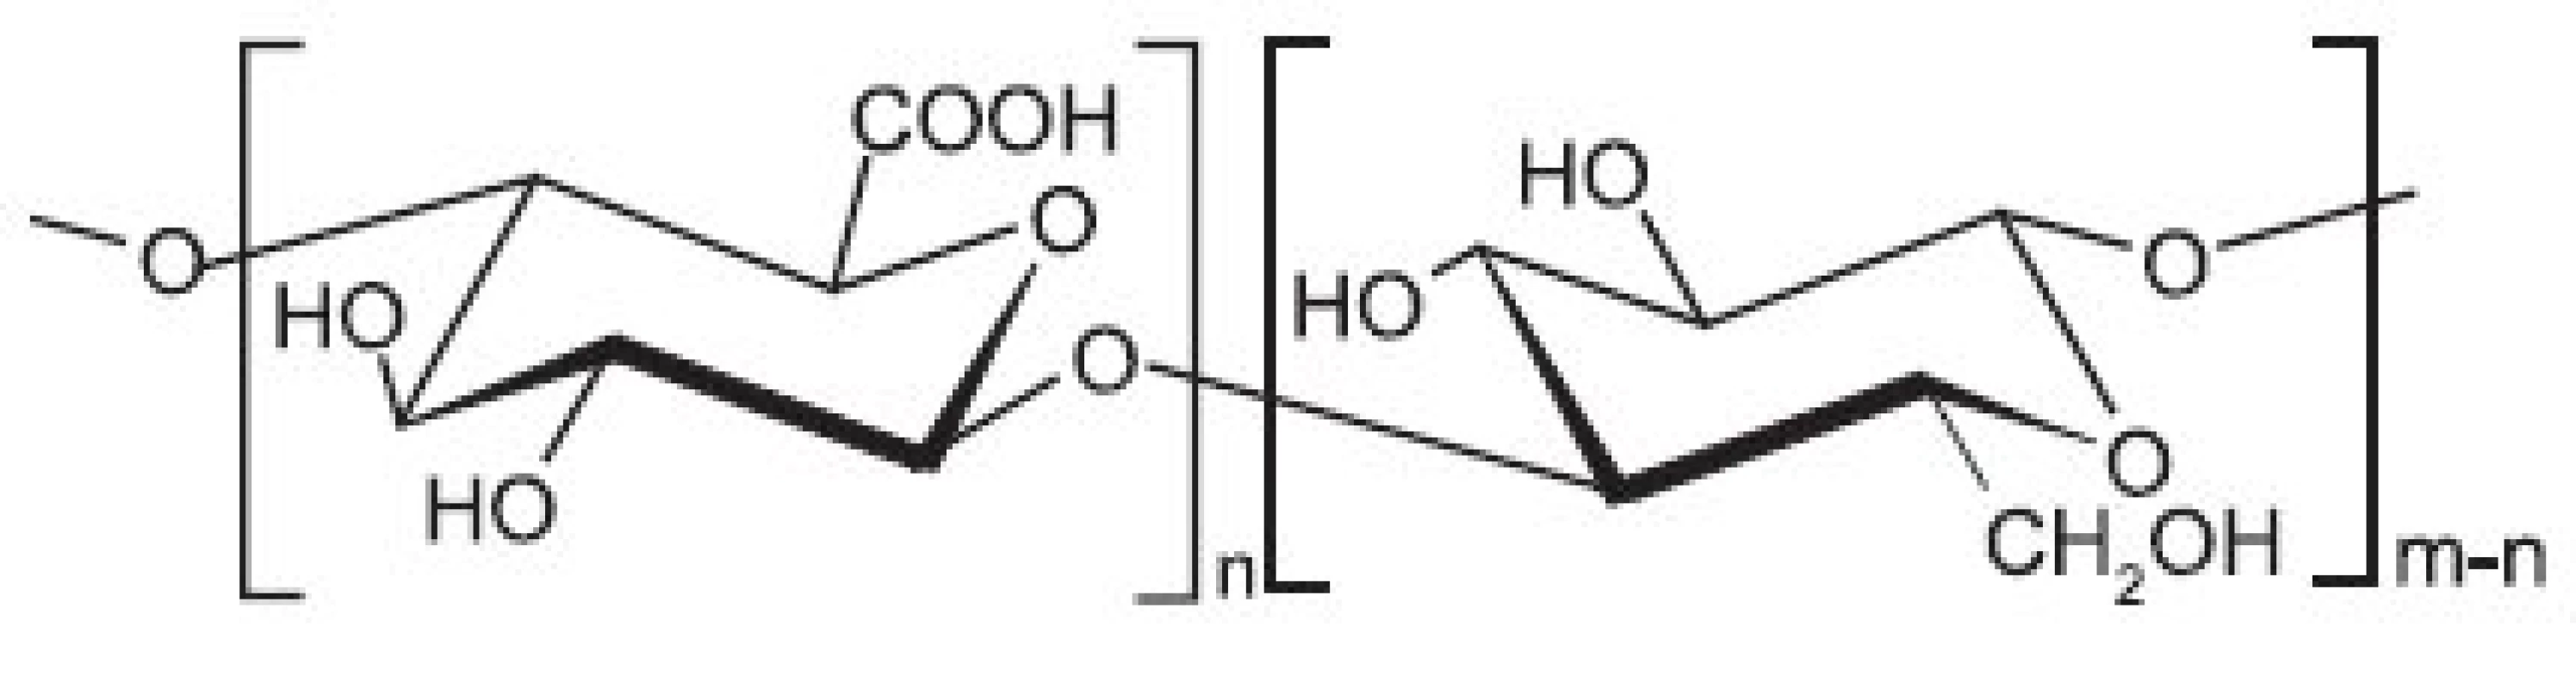 Strukturní vzorec oxycelulosy